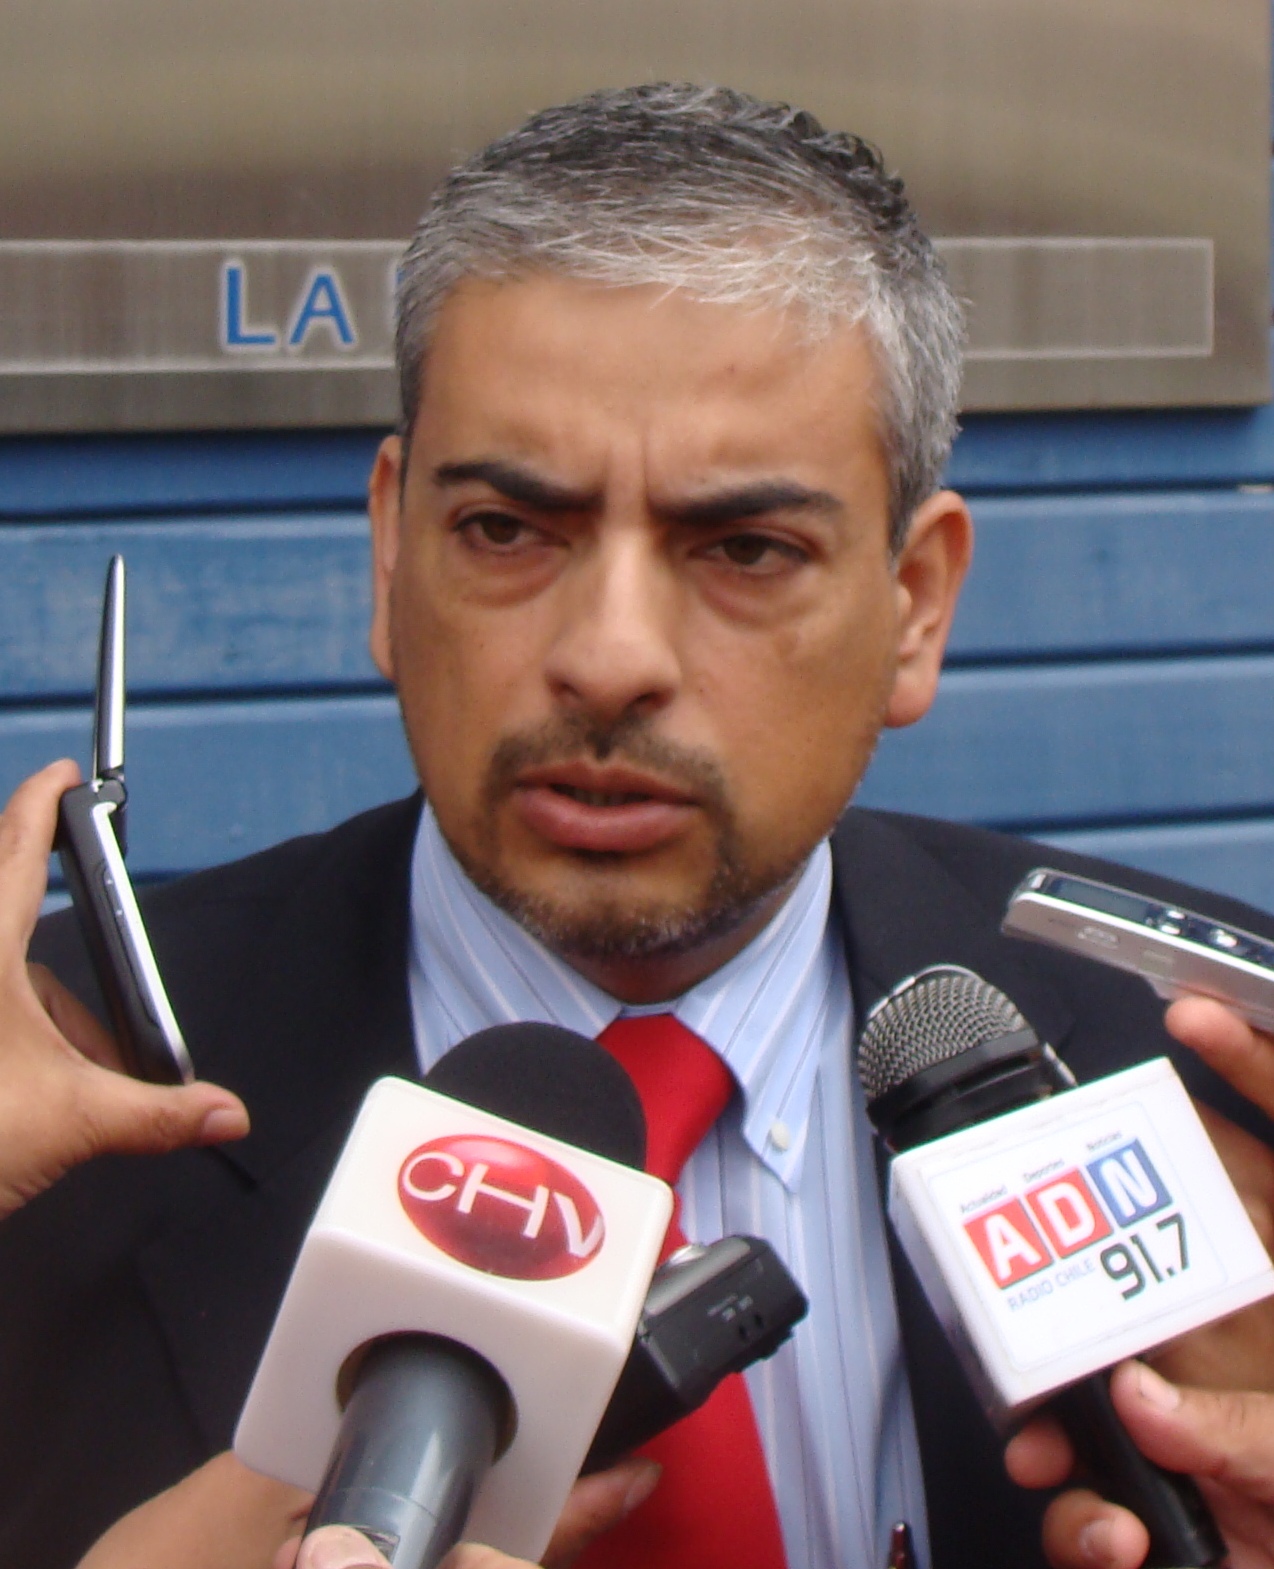 El fiscal Raúl Suárez pide una pena de 7 años de presidio contra el acusado.